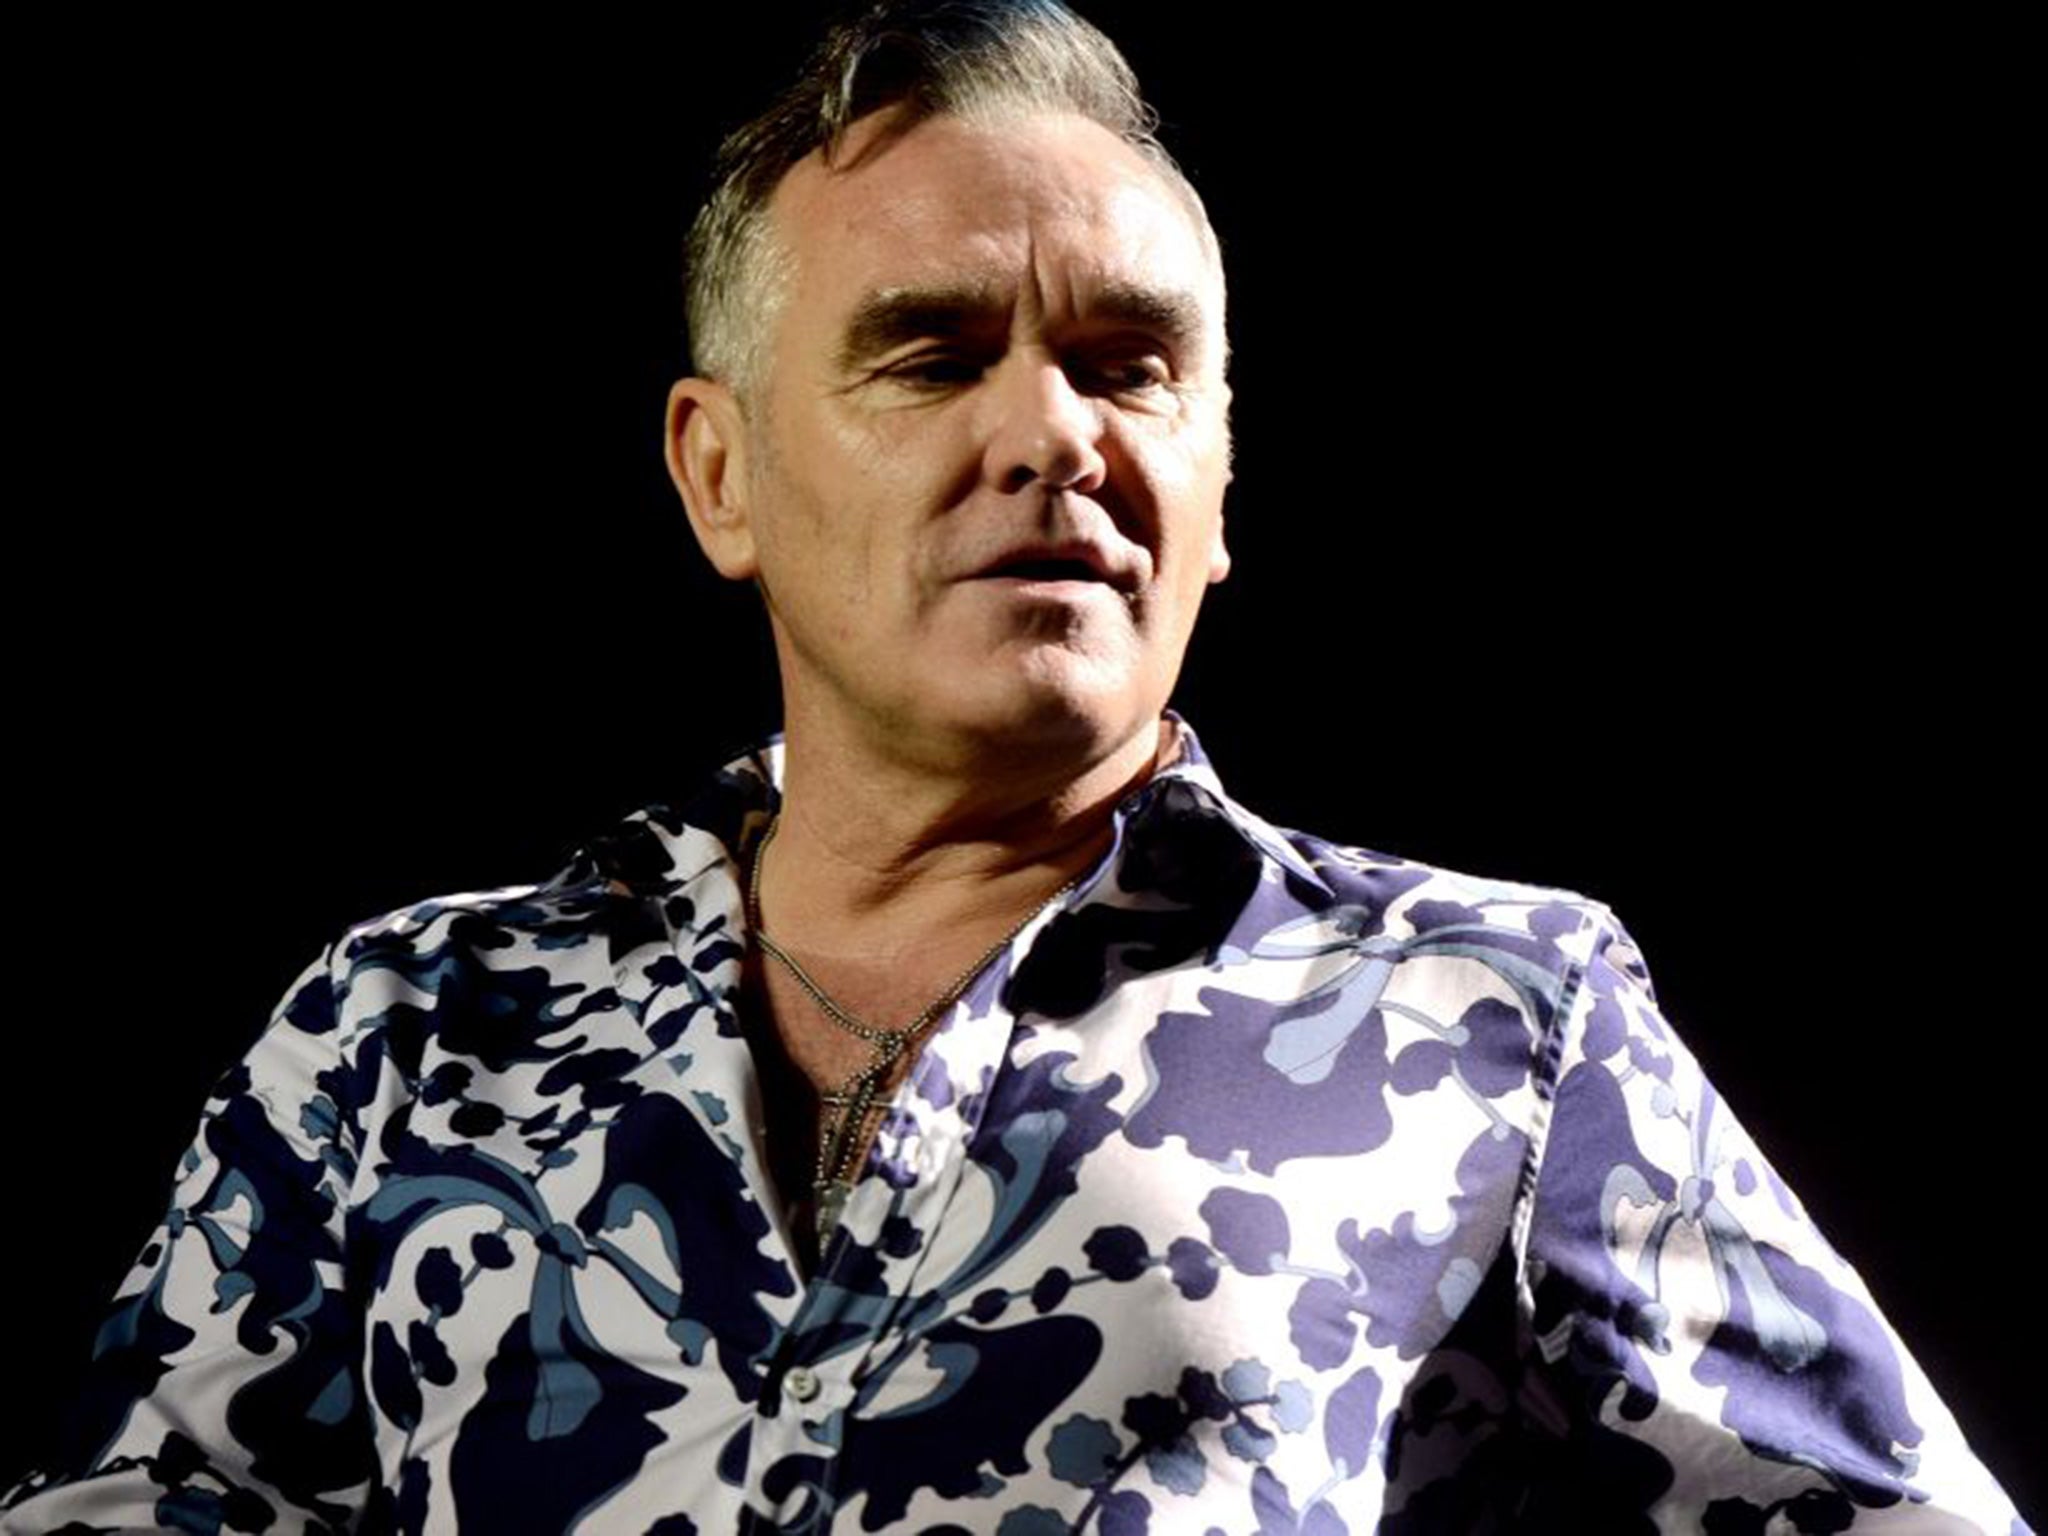 Morrissey has released his new album California Son